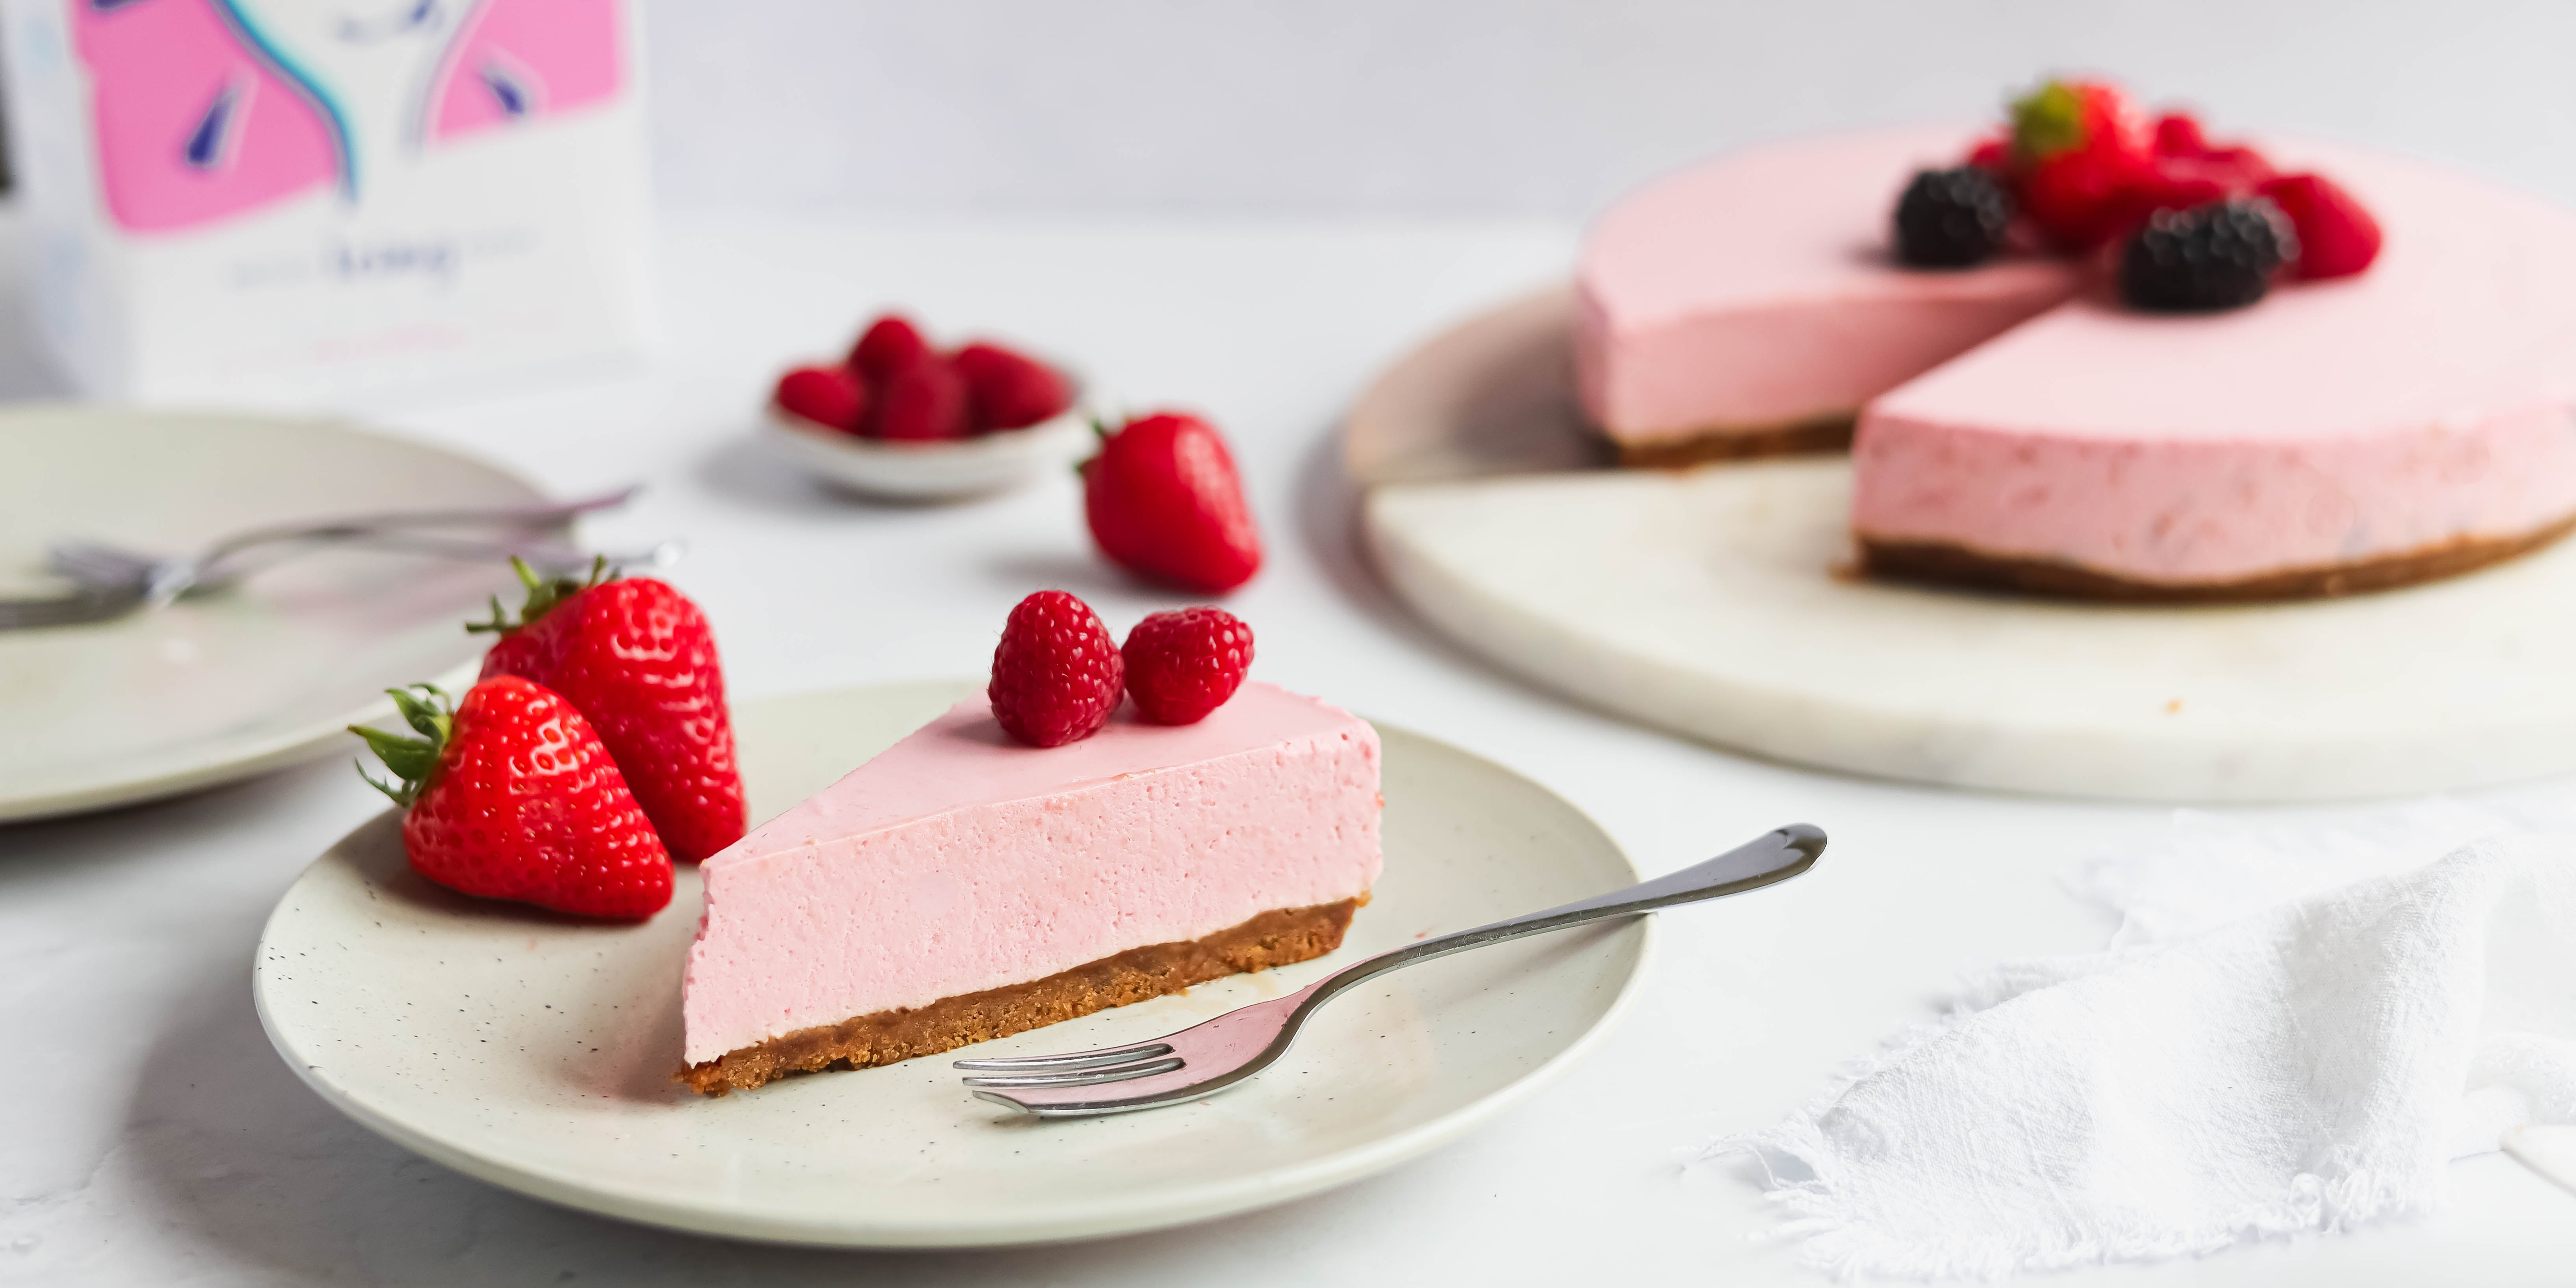 Mixed Berry Layer Cake Recipe - Baking Cherry